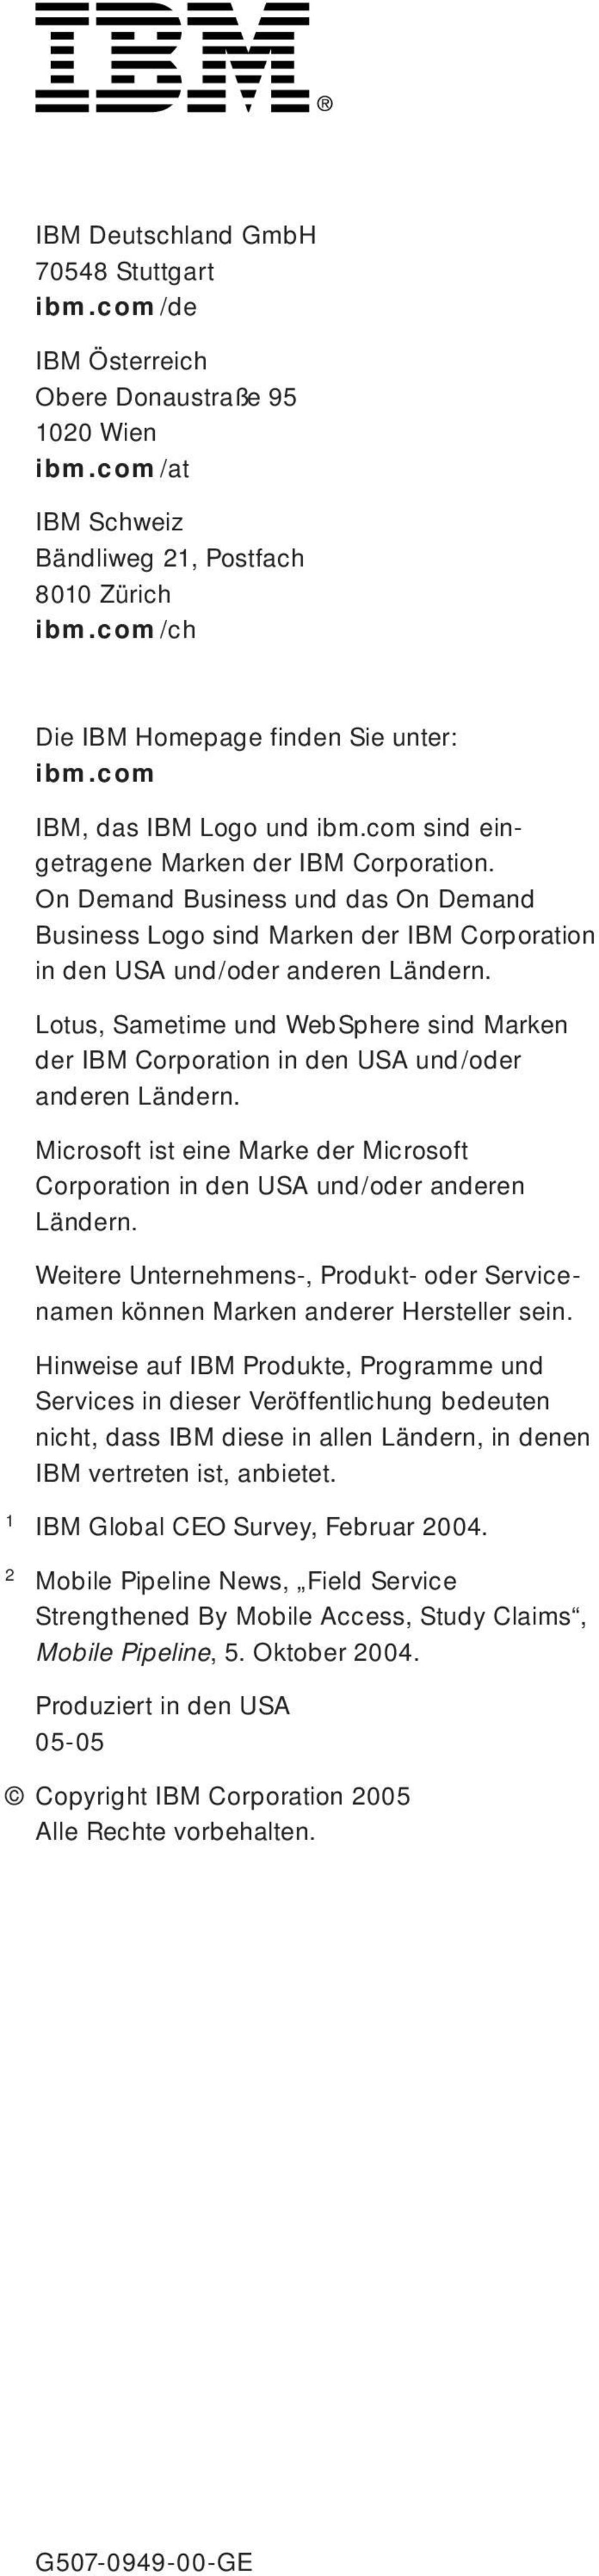 On Demand Business und das On Demand Business Logo sind Marken der IBM Corporation in den USA und/oder anderen Ländern.